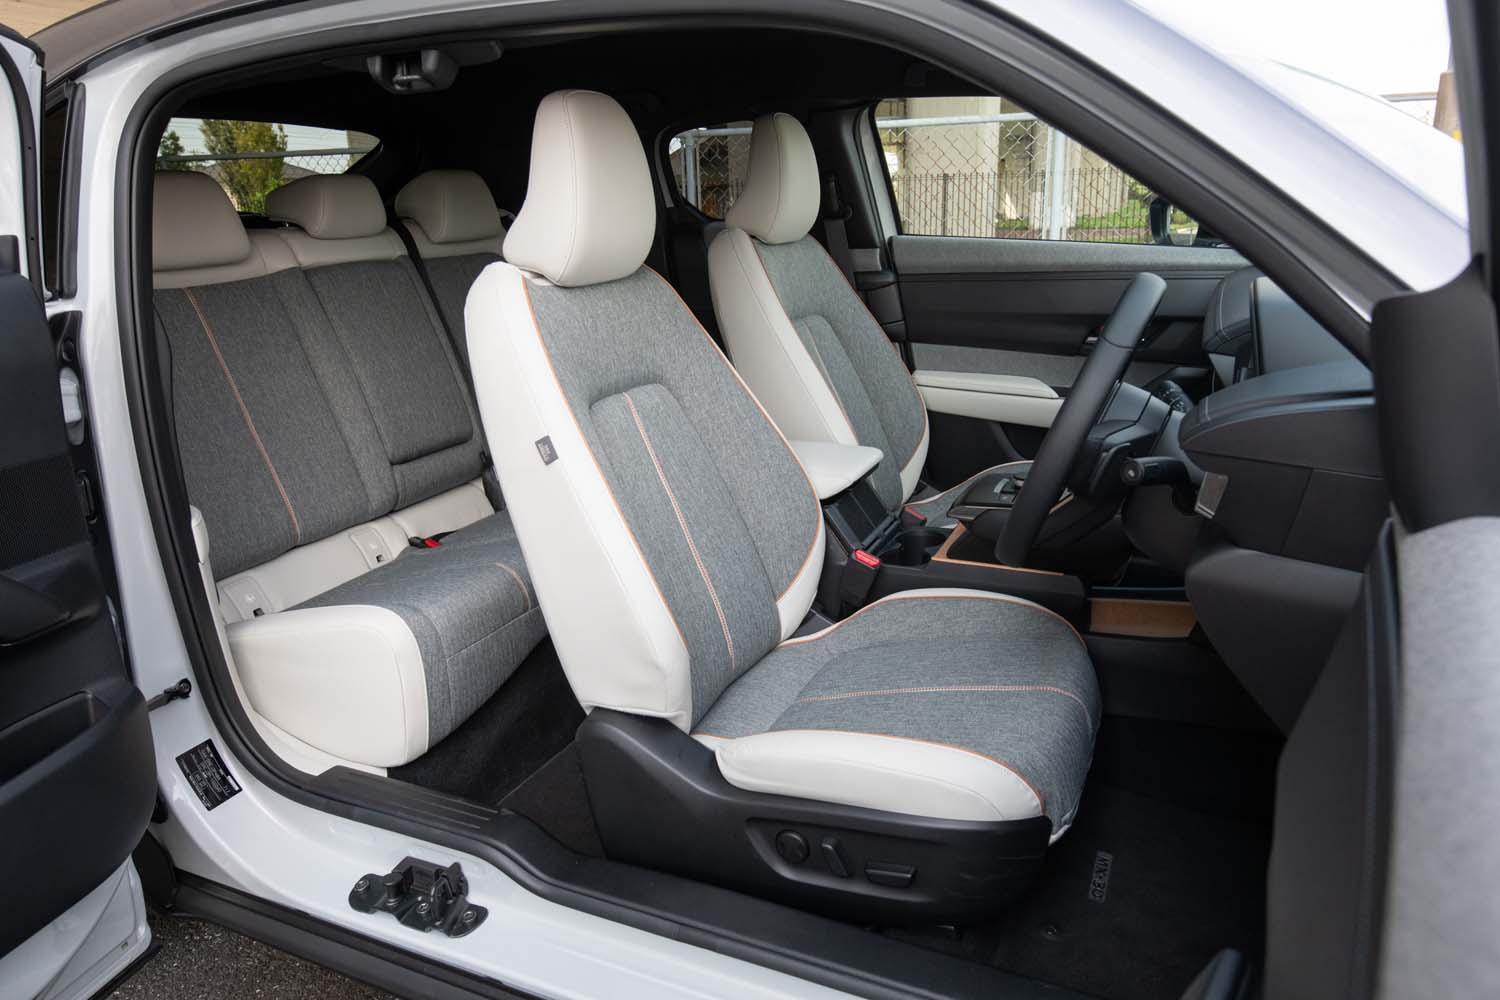 ホワイト内装車のシート表皮はホワイトの合皮とメランジ調のクロスの組み合わせ。オレンジステッチのアクセントがおしゃれだ。